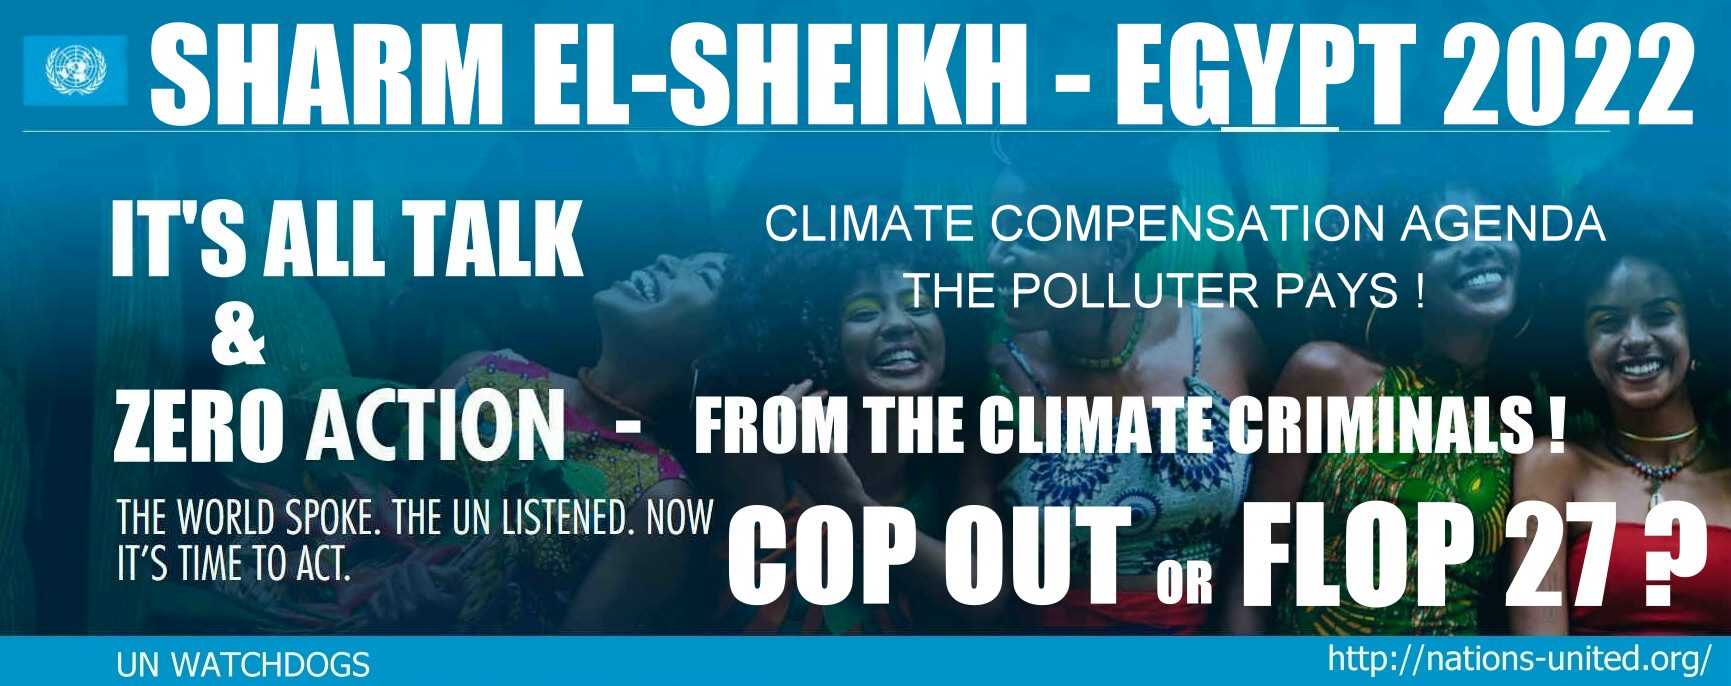 COP27 Sharm El-Sheikh